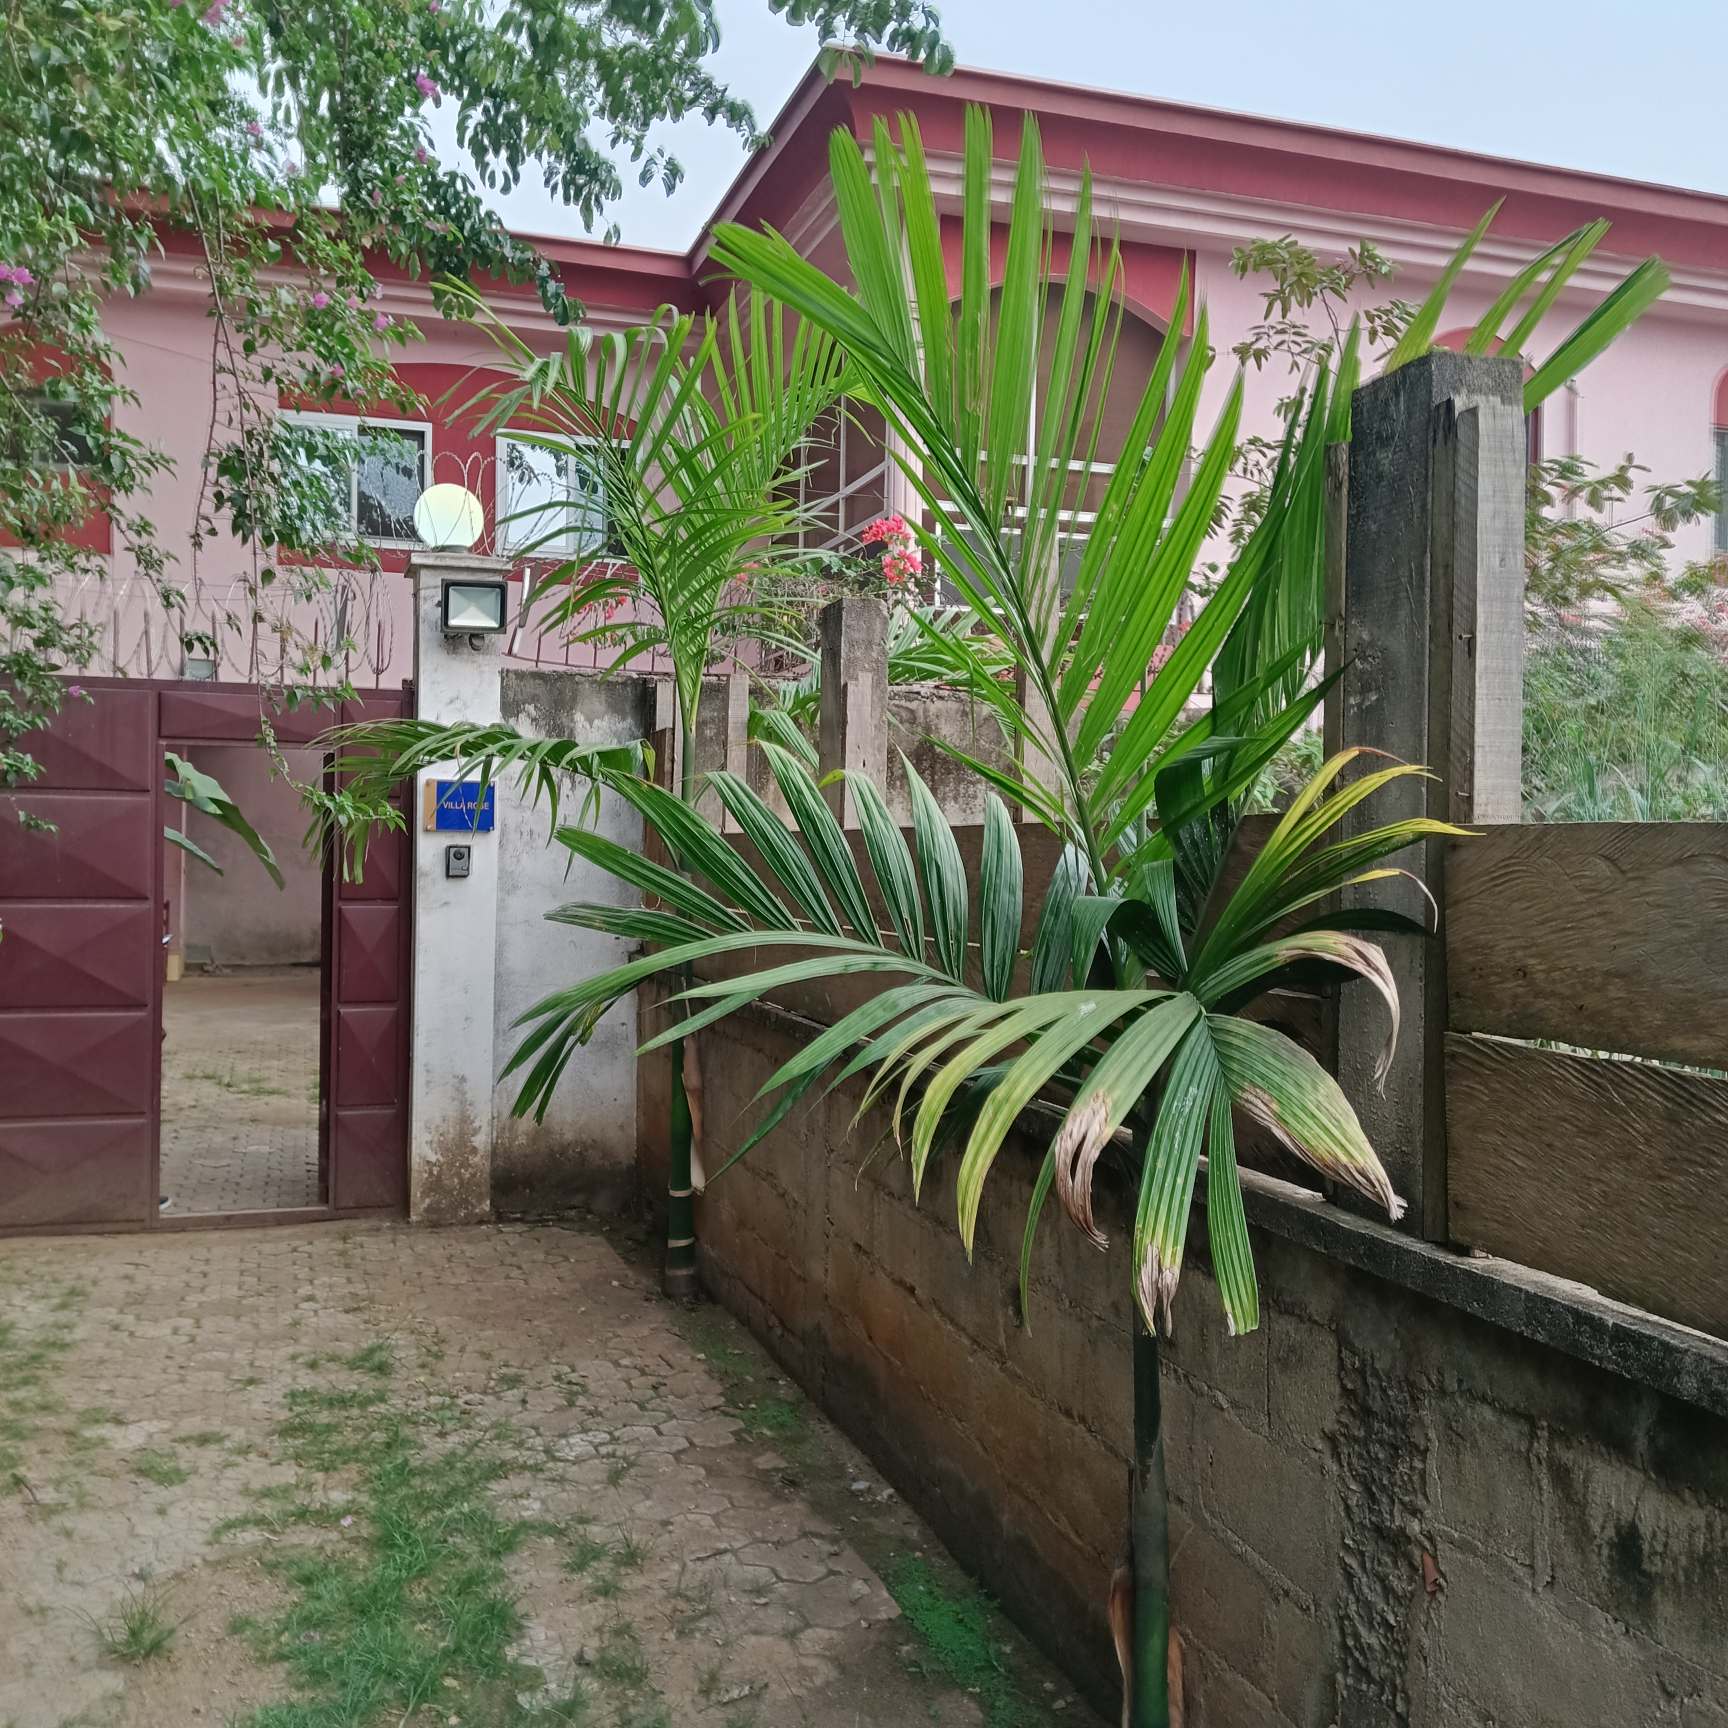 Maison (Duplex) à louer - Yaoundé, Bastos, Vers dragage - 2 salon(s), 4 chambre(s), 4 salle(s) de bains - 1 500 000 FCFA / mois